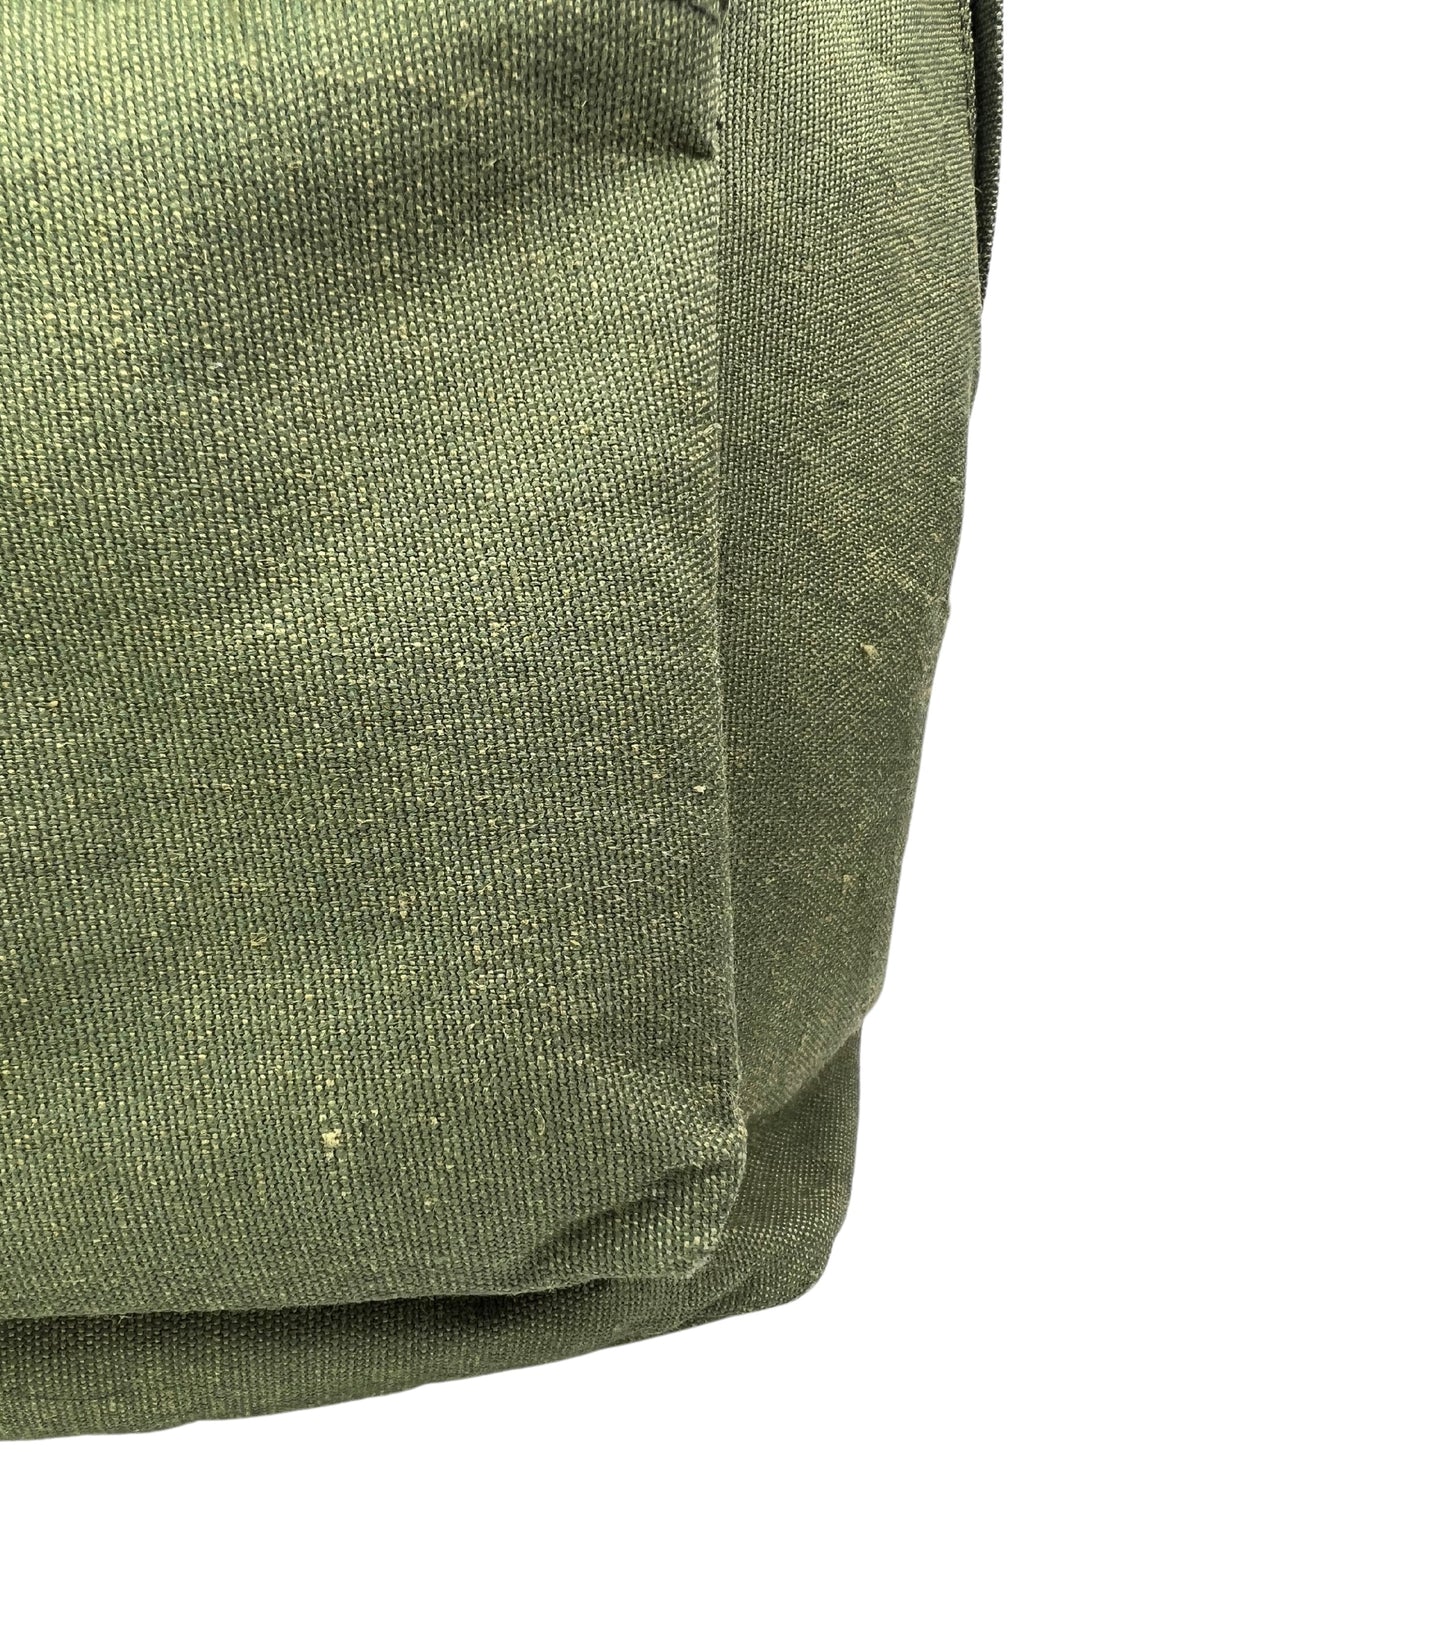 90’s Grunge Green Lucas Gear Canvas Backpack